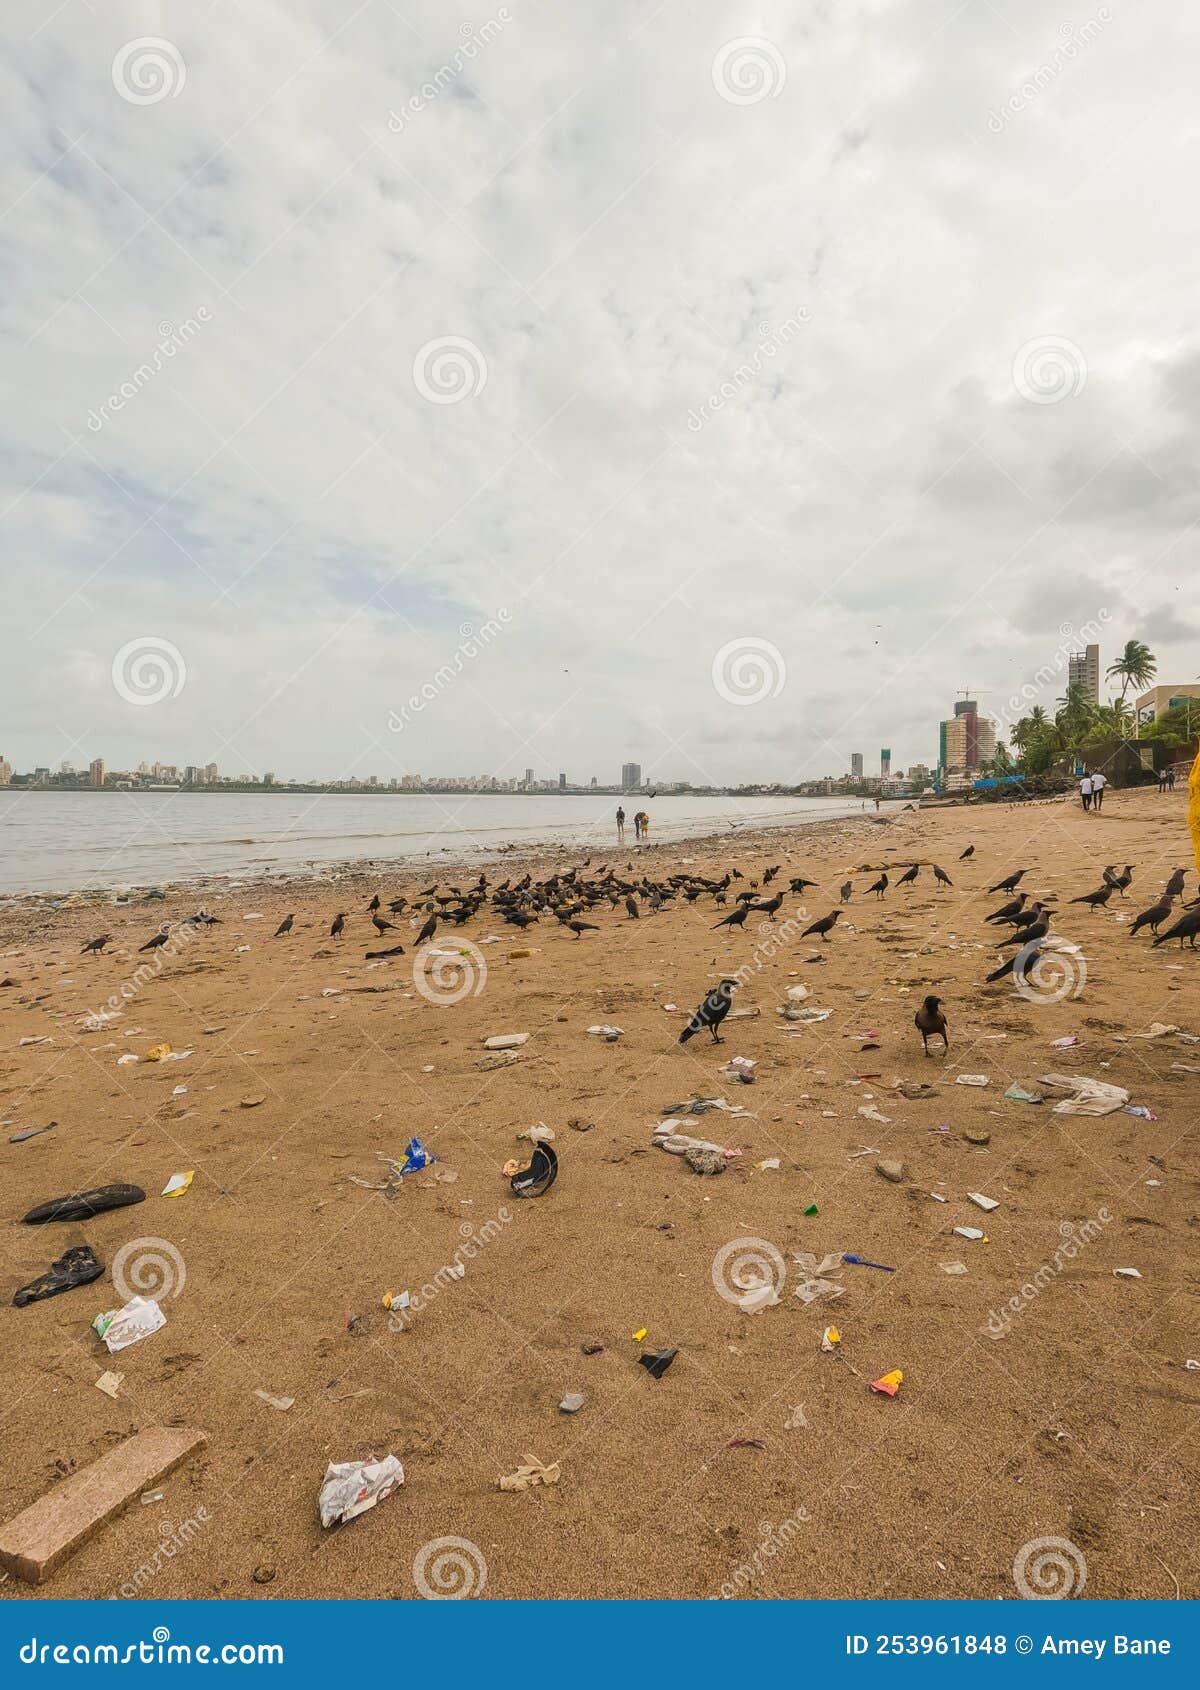 crows sitting at beach at dadar chowpatty, mumbai, india